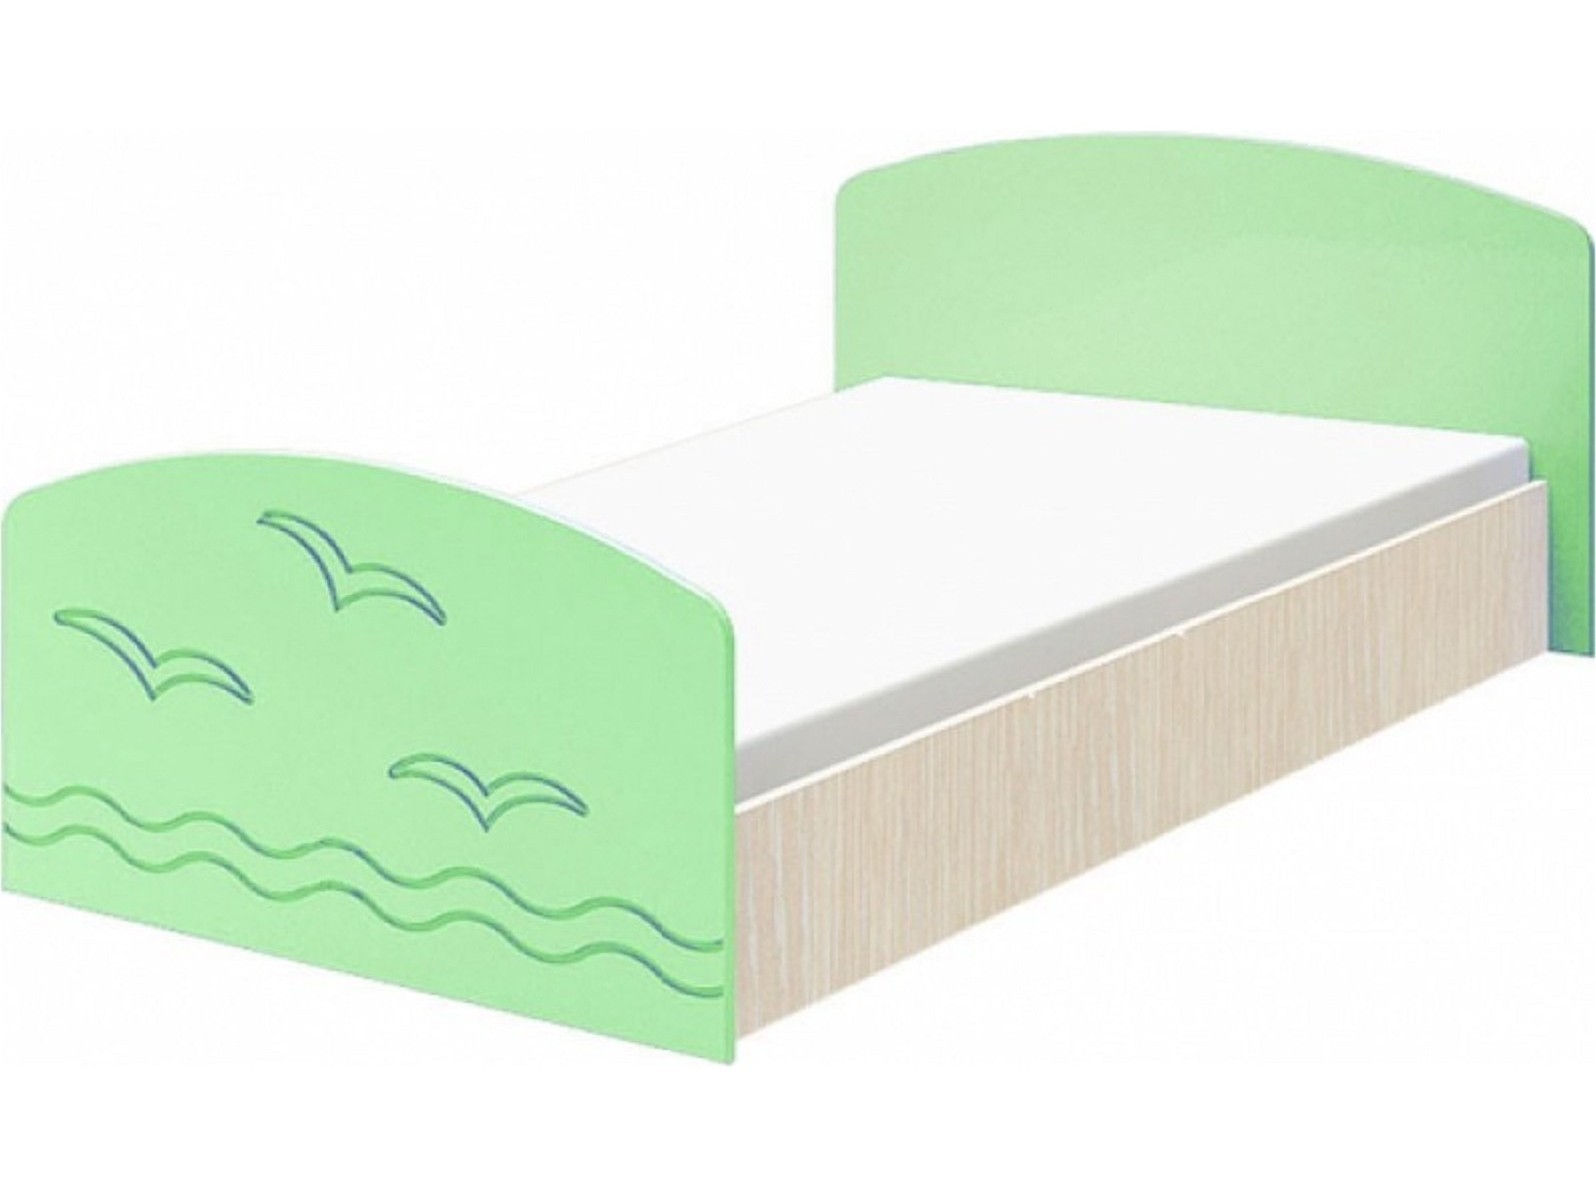 Юниор-2 Детская кровать 80, матовый (Салатовый, Дуб белёный) Зеленый, МДФ, ЛДСП юниор 2 комод матовый салатовый дуб белёный зеленый мдф лдсп